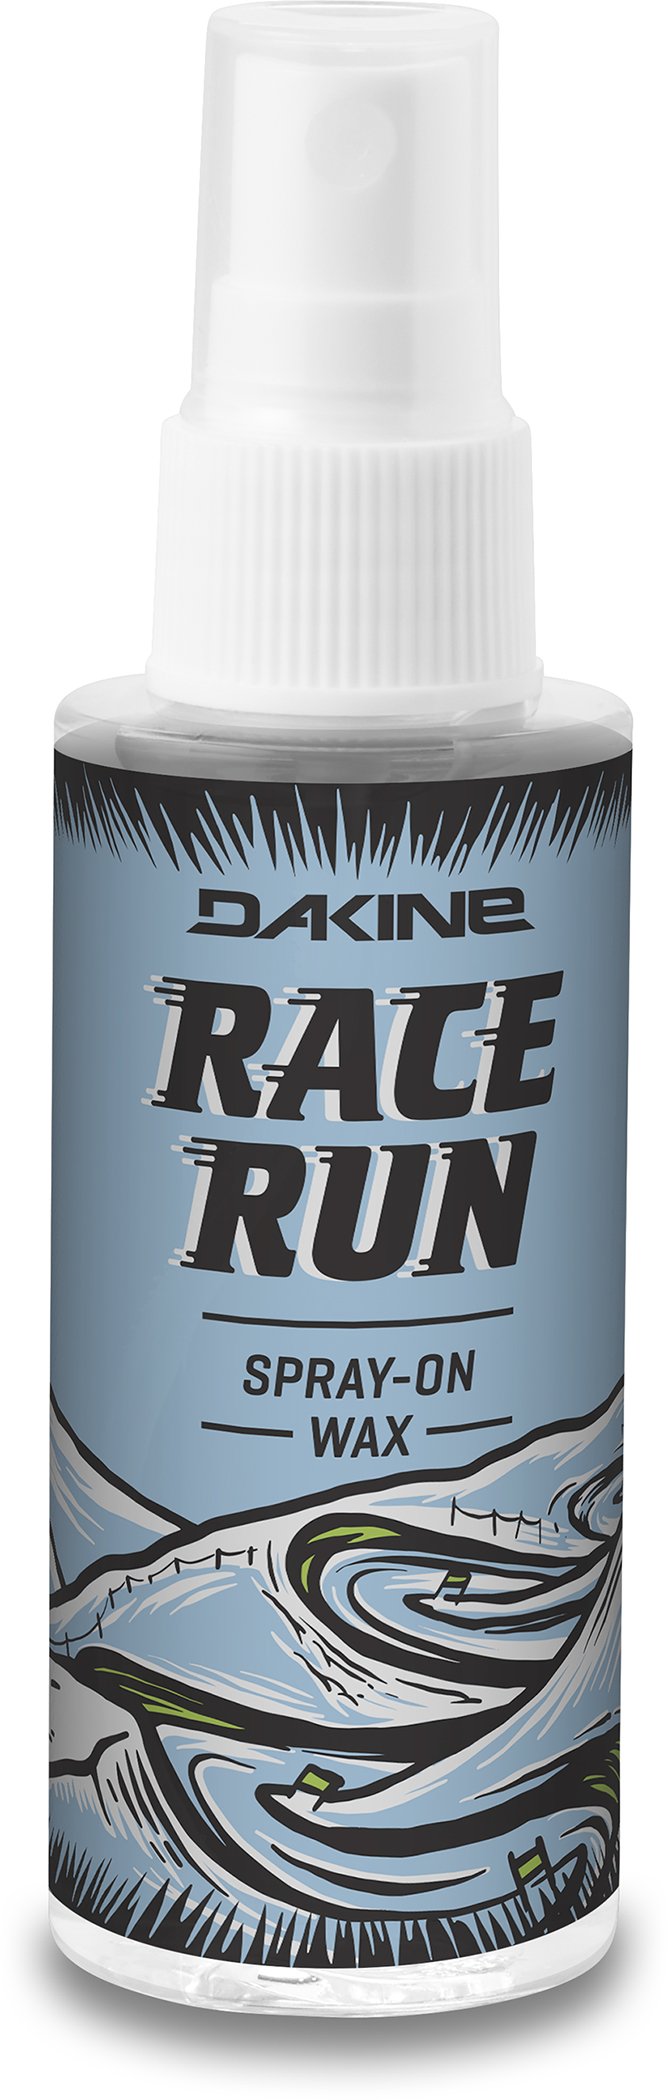 Dakine Race Wax